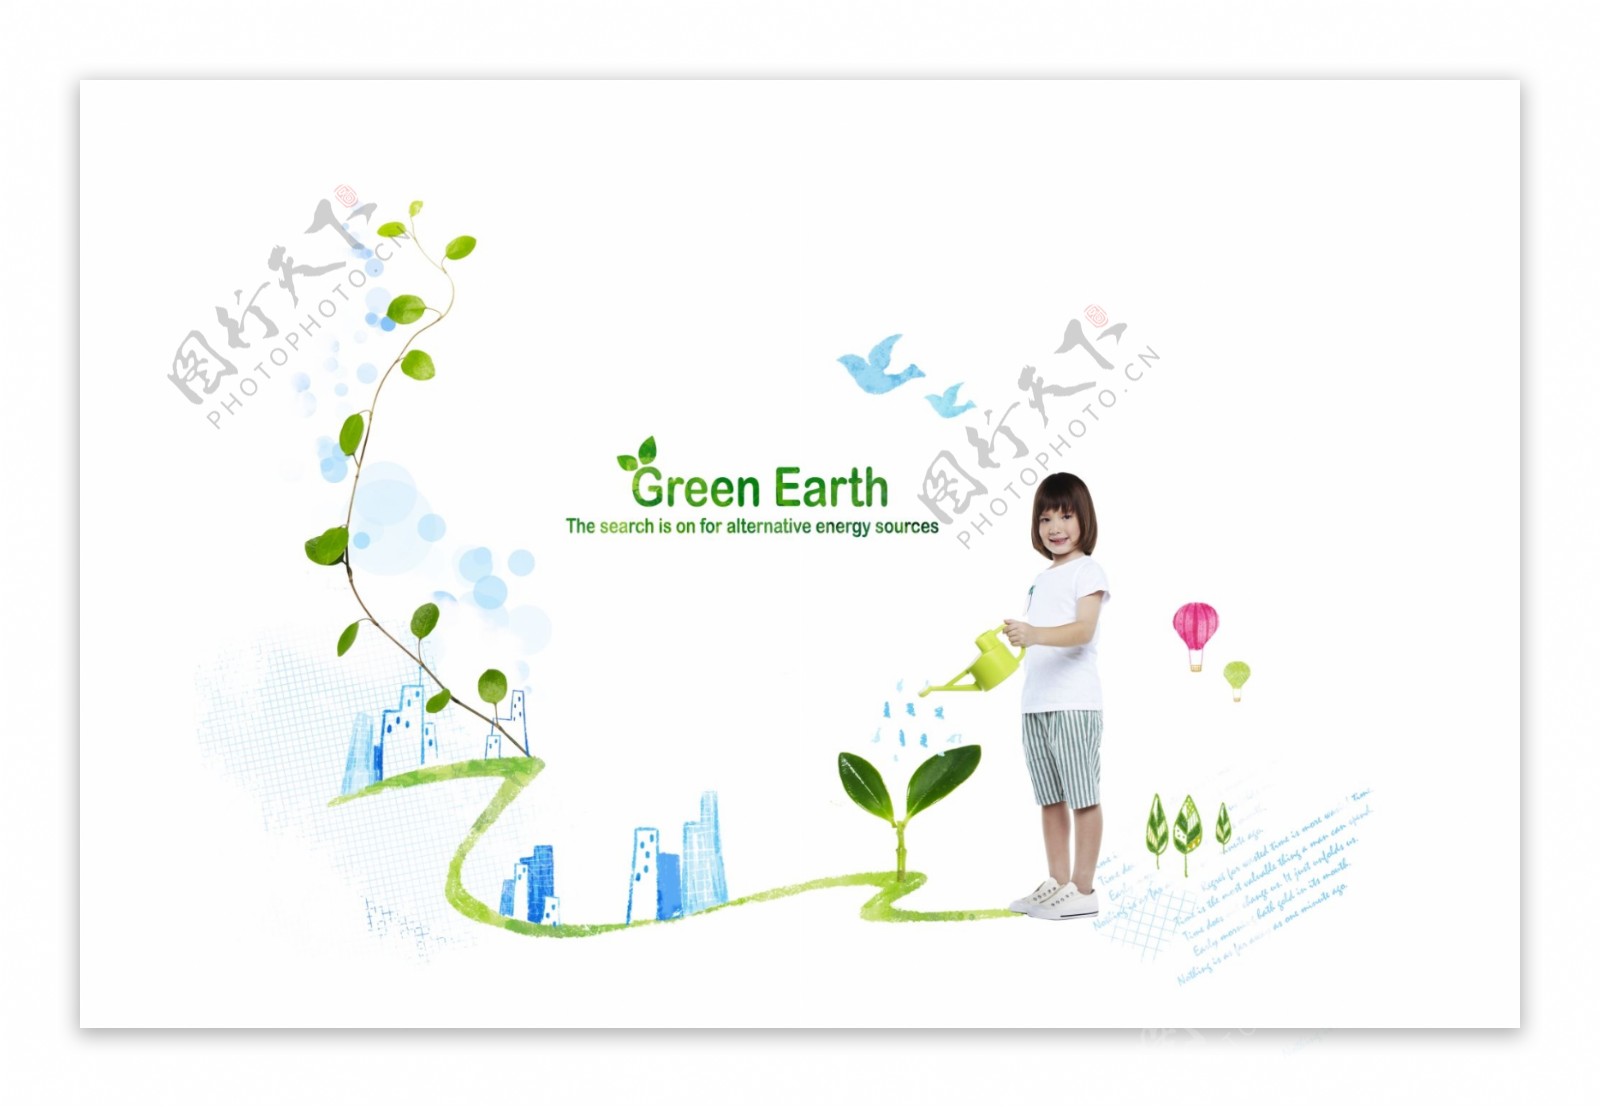 绿植环保图片